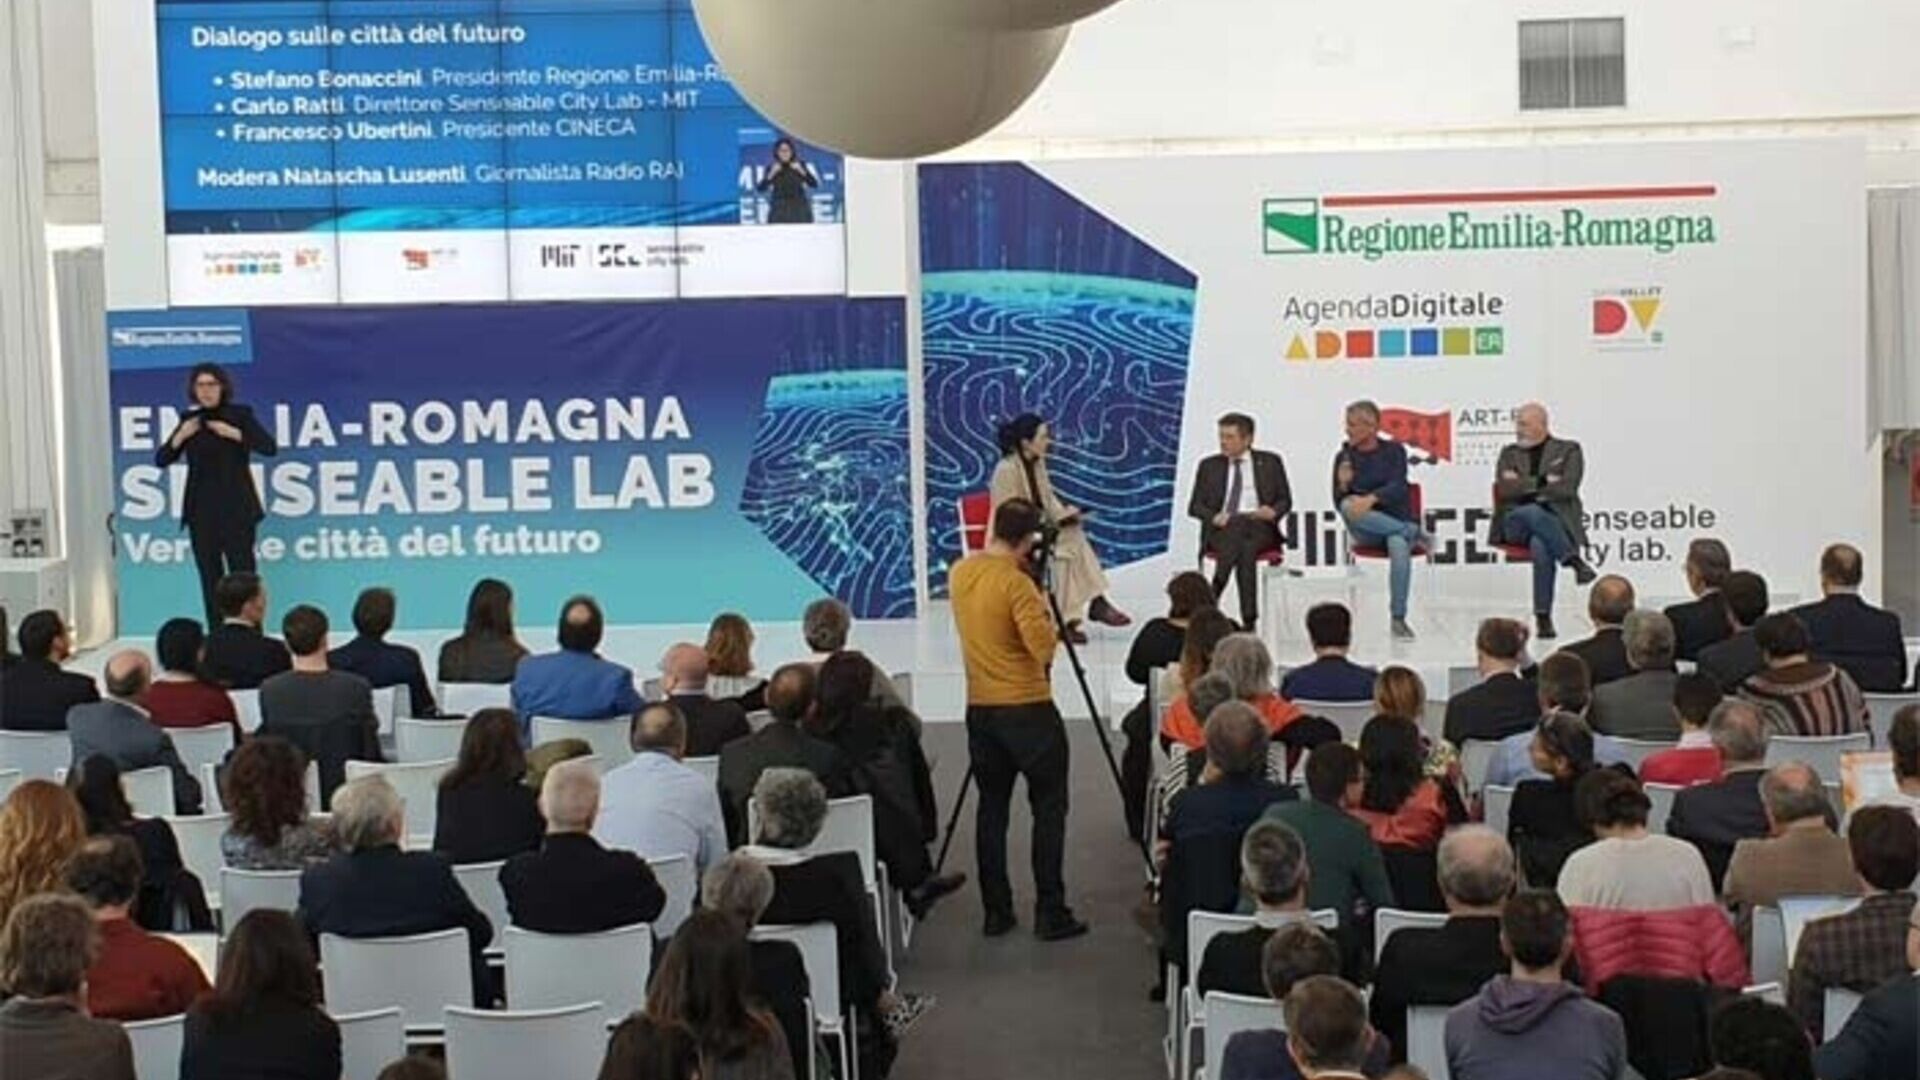 Massachusetts Institute of Technology: il MIT Senseable City Lab approderà al Tecnopolo di Bologna per immaginare le città del futuro grazie alla collaborazione con la Regione Emilia-Romagna